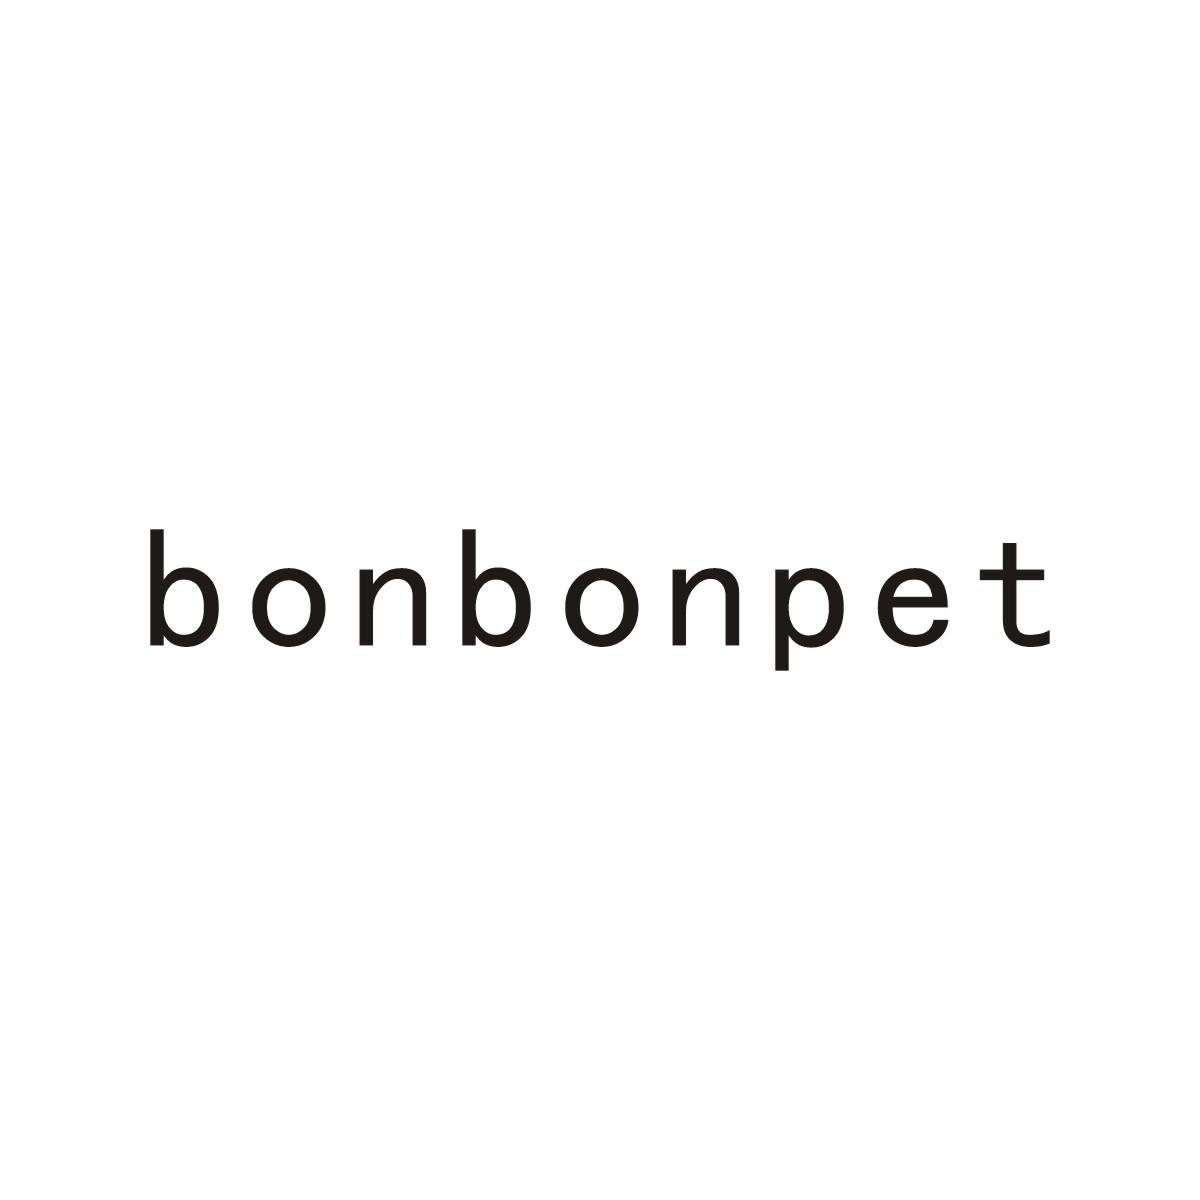 BONBONPET